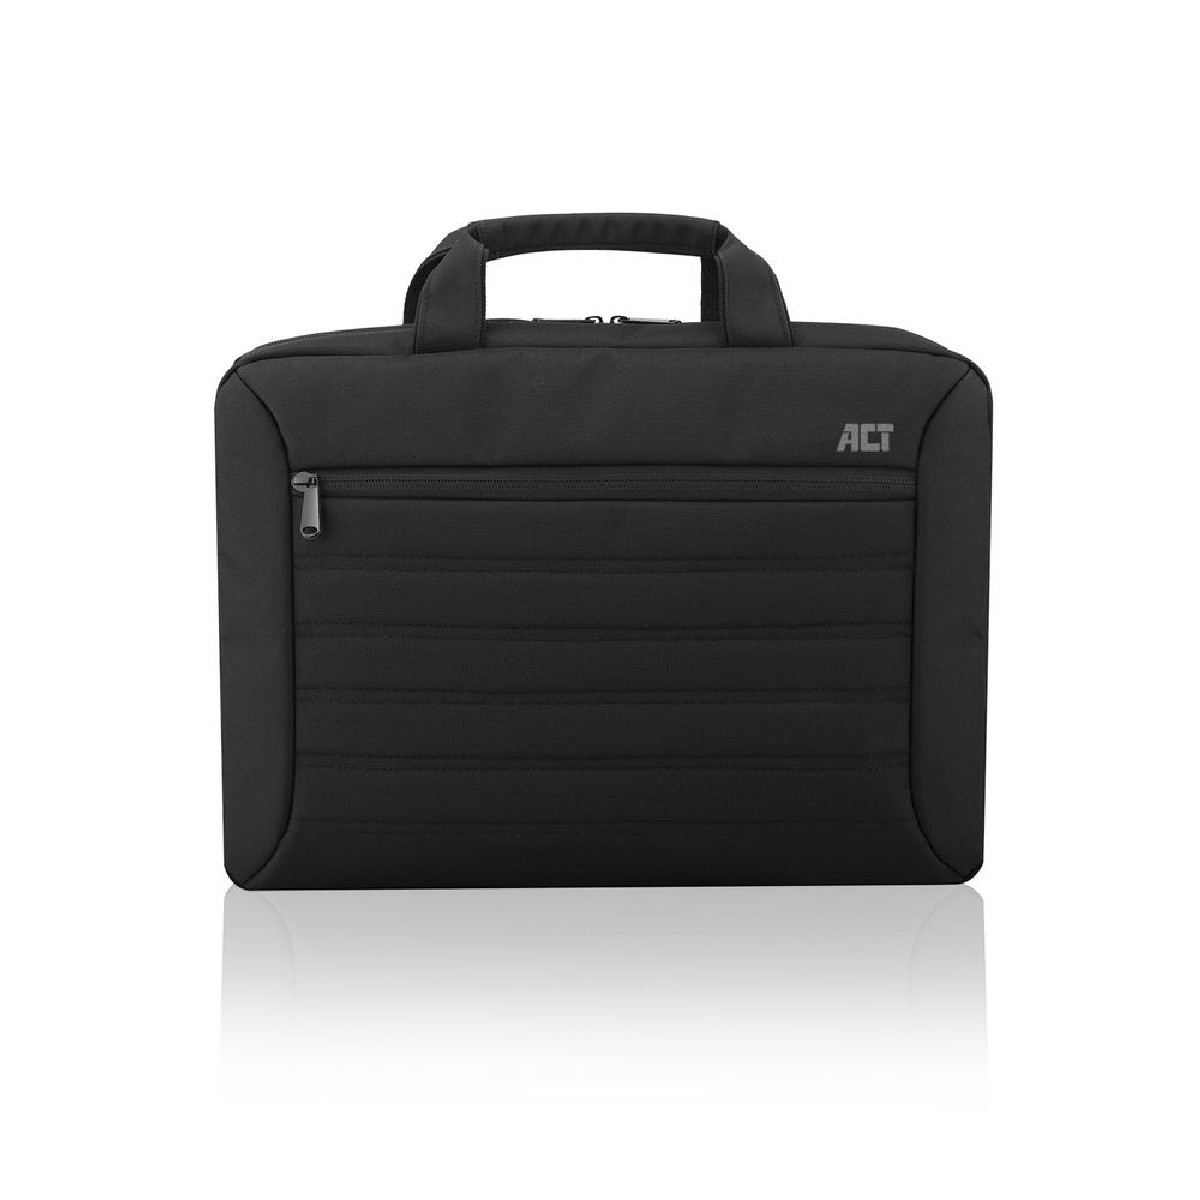 Bailhandle für Laptop universal schwarz Umhängetasche AC8525 Urban bag ACT Polyester-Gemisch,